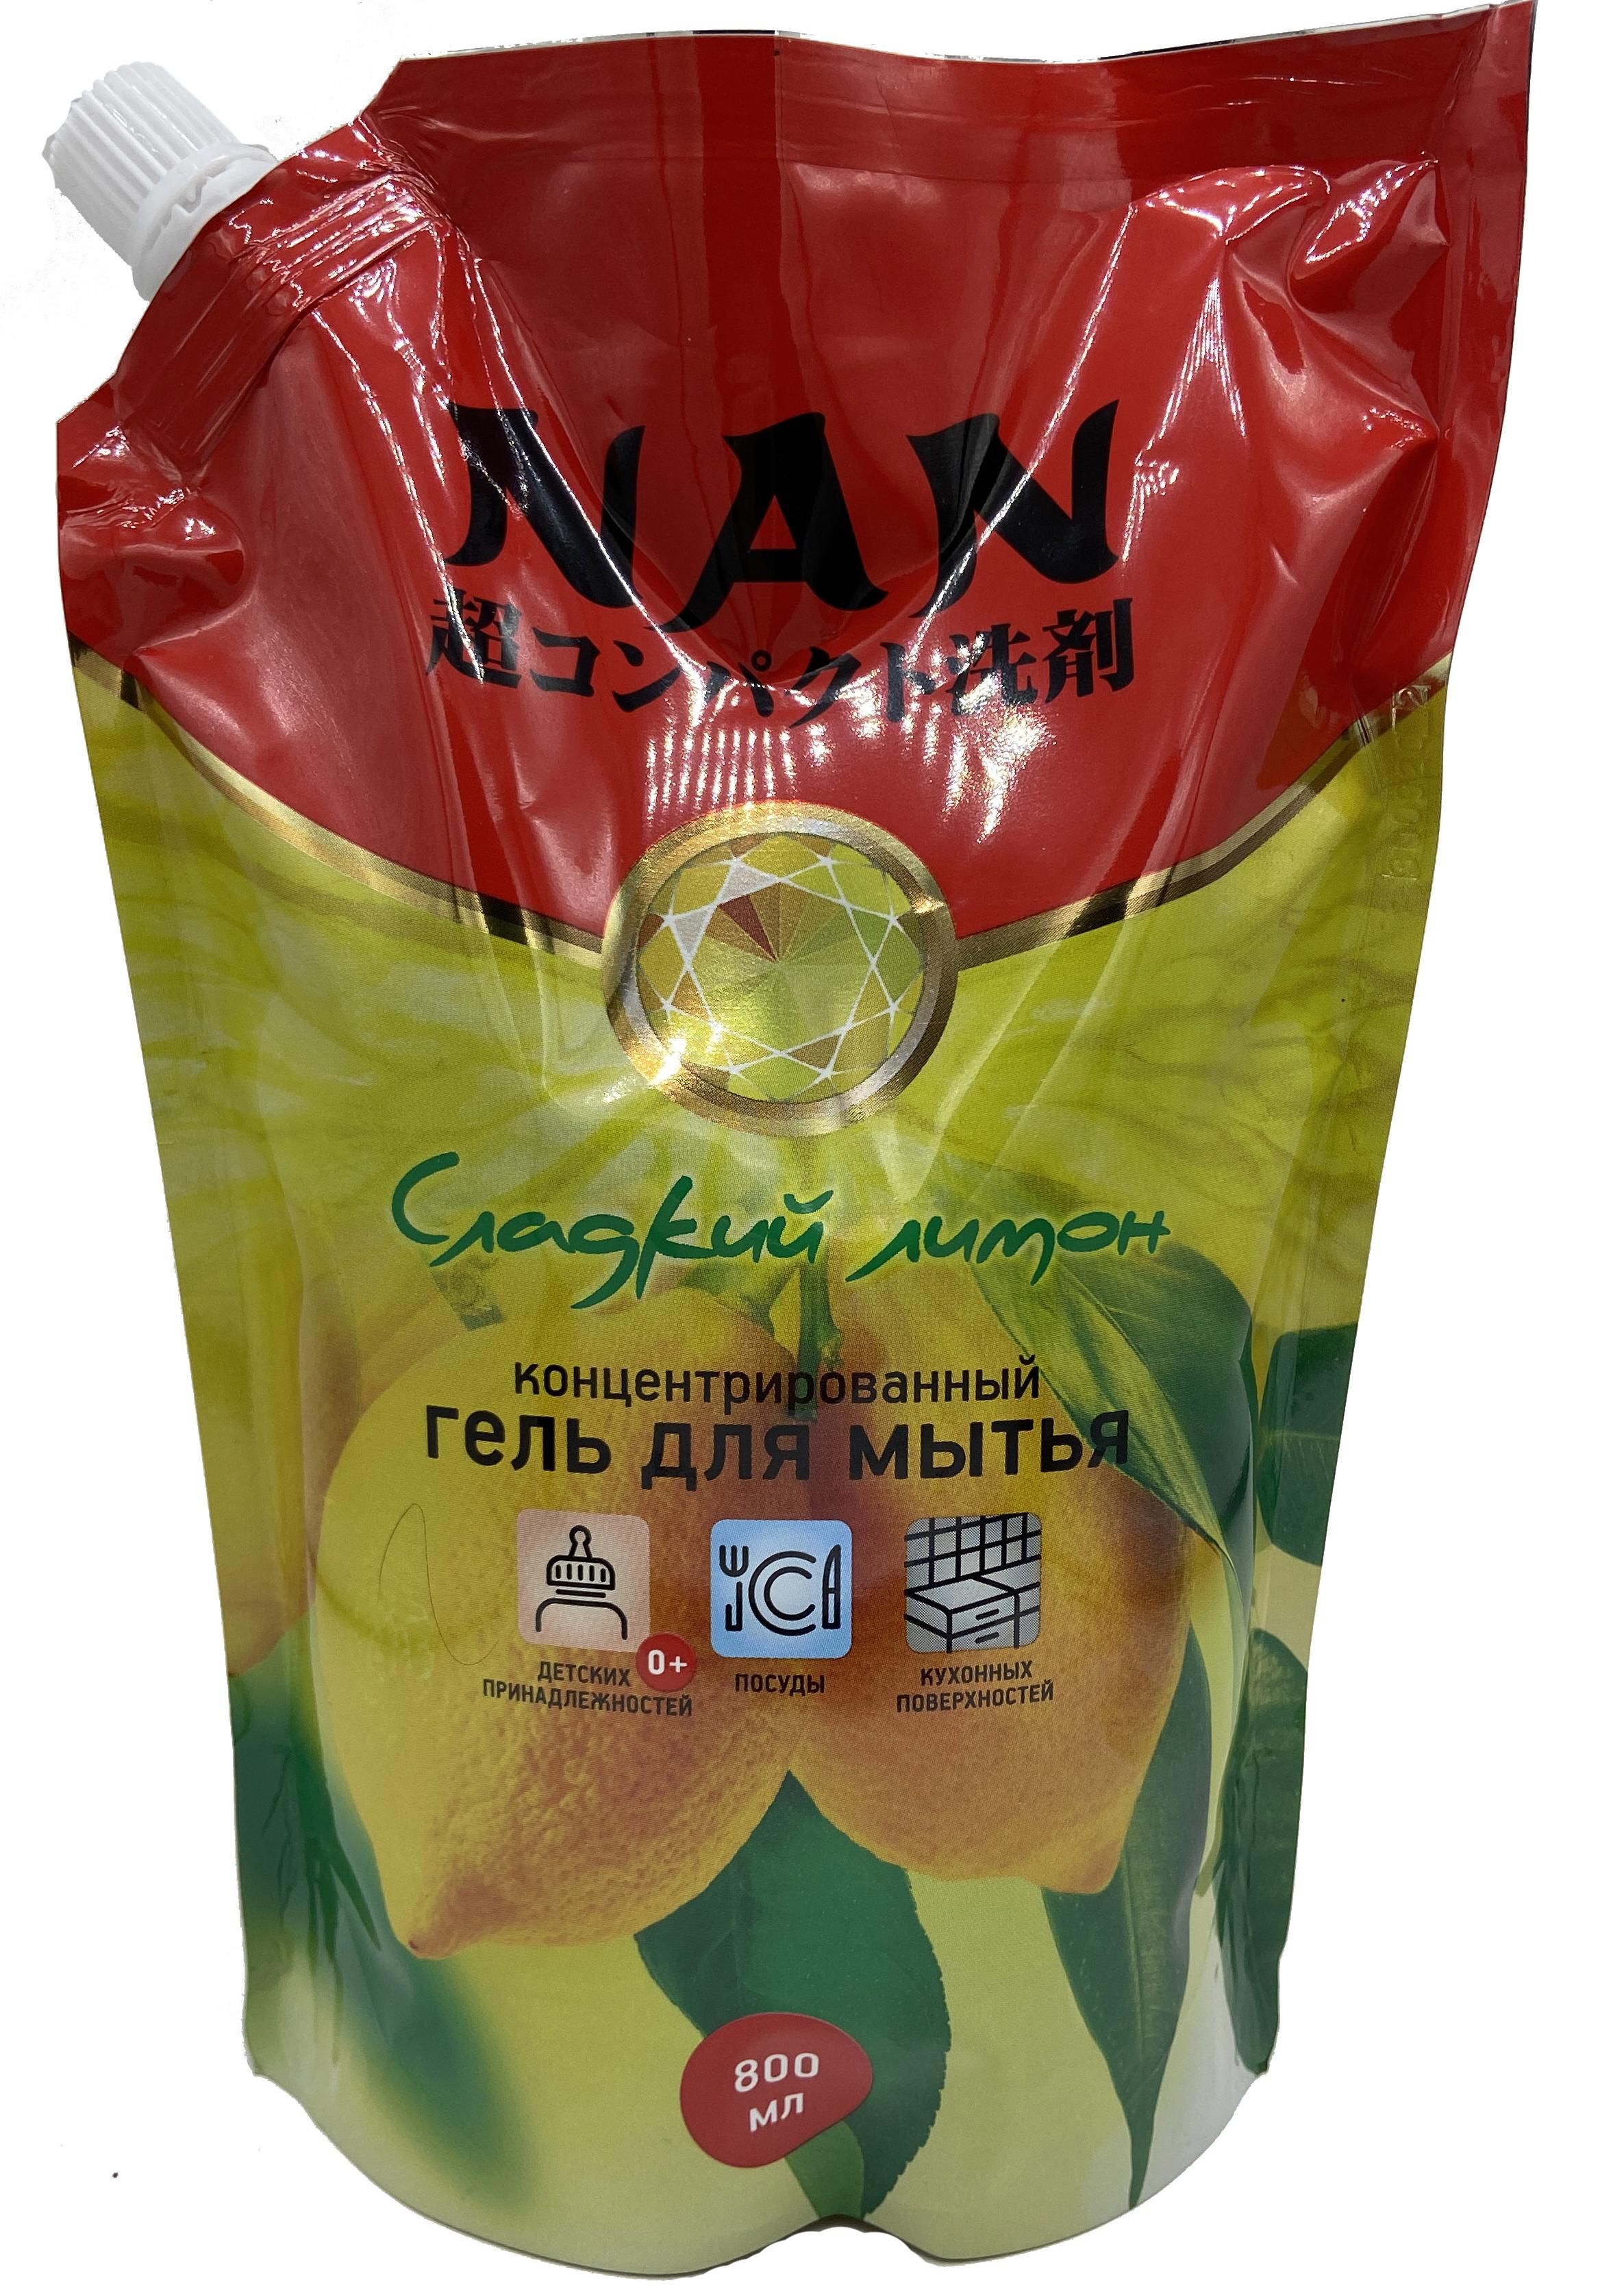 NAN Концентрированный гель для мытья посуды, детских принадлежностей и кухонных поверхностей Сладкий лимон 800 мл в мягкой упаковке